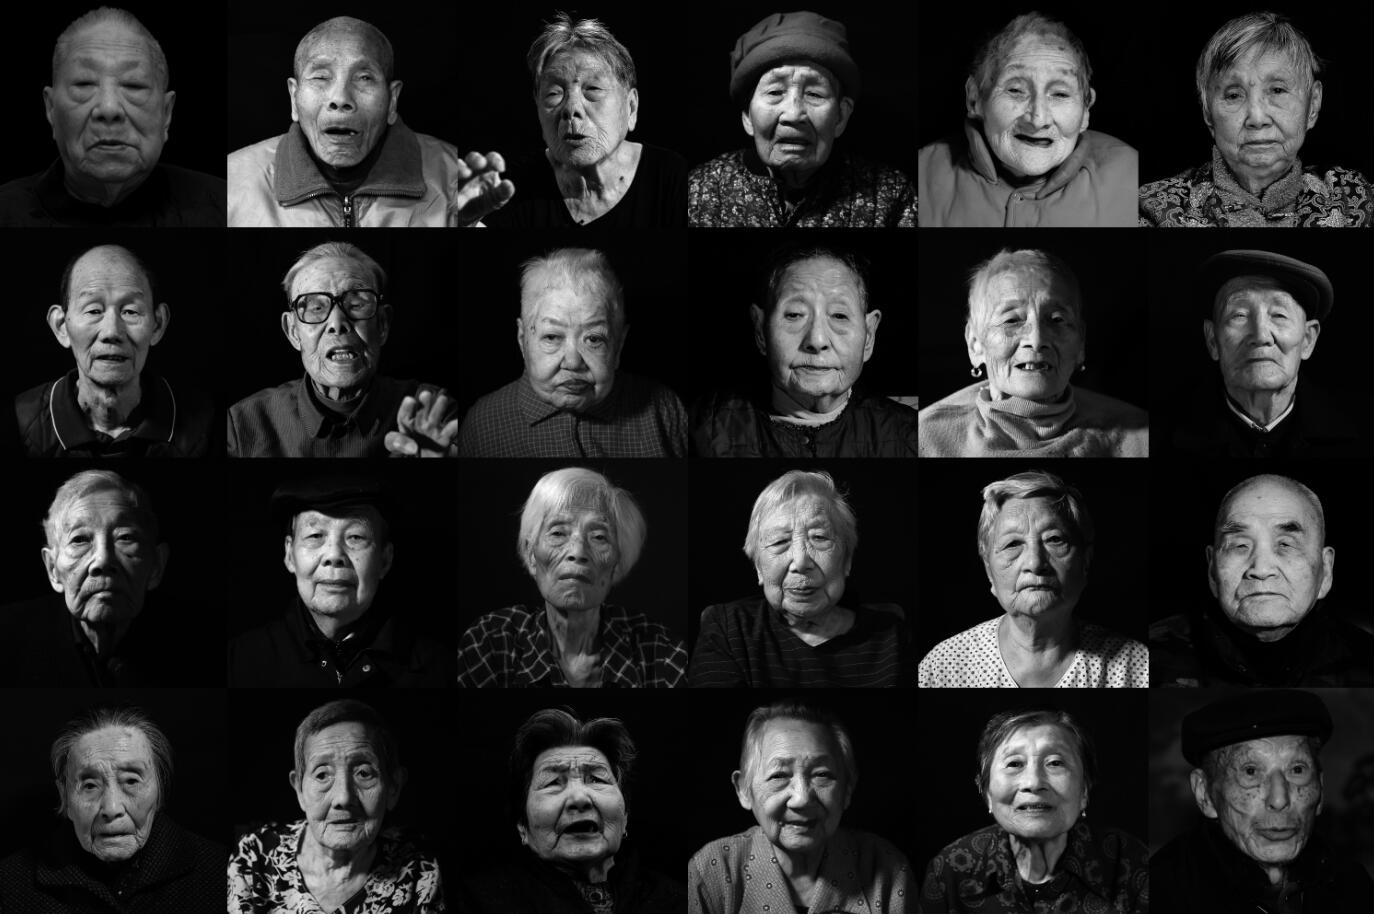 這是部分逝世南京大屠殺倖存者的照片(拼版照片)C新華社記者從2014年開始整體性關注南京大屠殺倖存者這一特殊群體A五年來持續不間斷尋訪記錄A已累計採訪近百名年逾八旬的老人C在記者與時間賽跑B搶救性拍攝記錄的同時A倖存者也在不斷離世A僅2018年初至今A已有20位倖存者相繼去世C新華社記者韓瑜慶B李響B季春鵬攝影報道